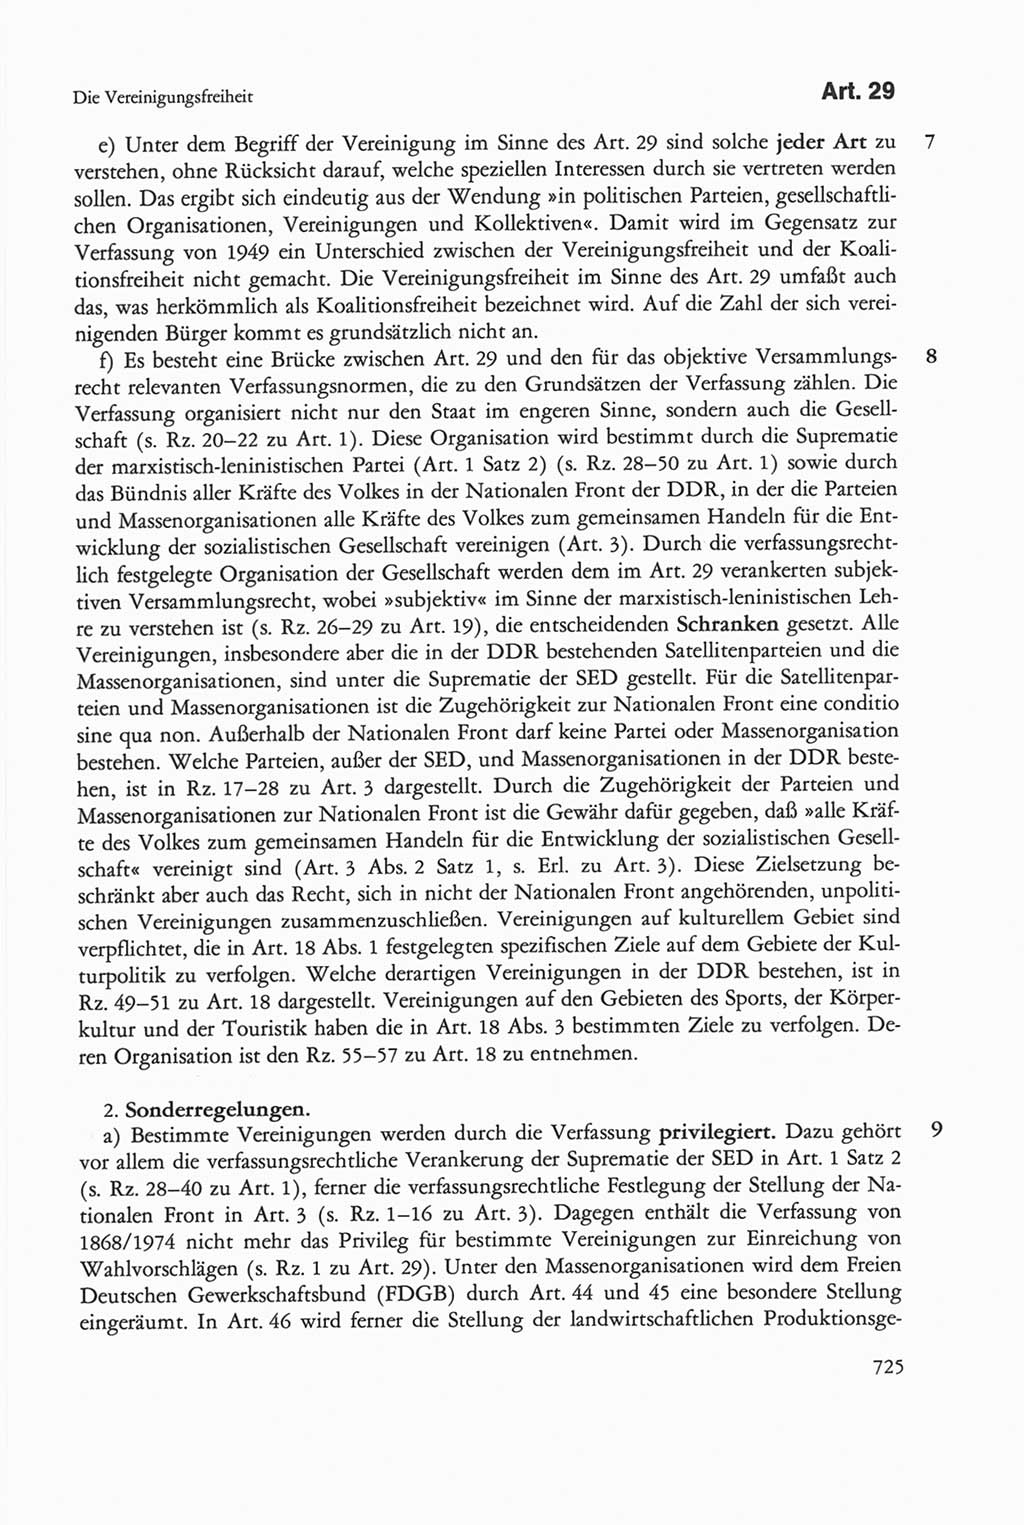 Die sozialistische Verfassung der Deutschen Demokratischen Republik (DDR), Kommentar mit einem Nachtrag 1997, Seite 725 (Soz. Verf. DDR Komm. Nachtr. 1997, S. 725)